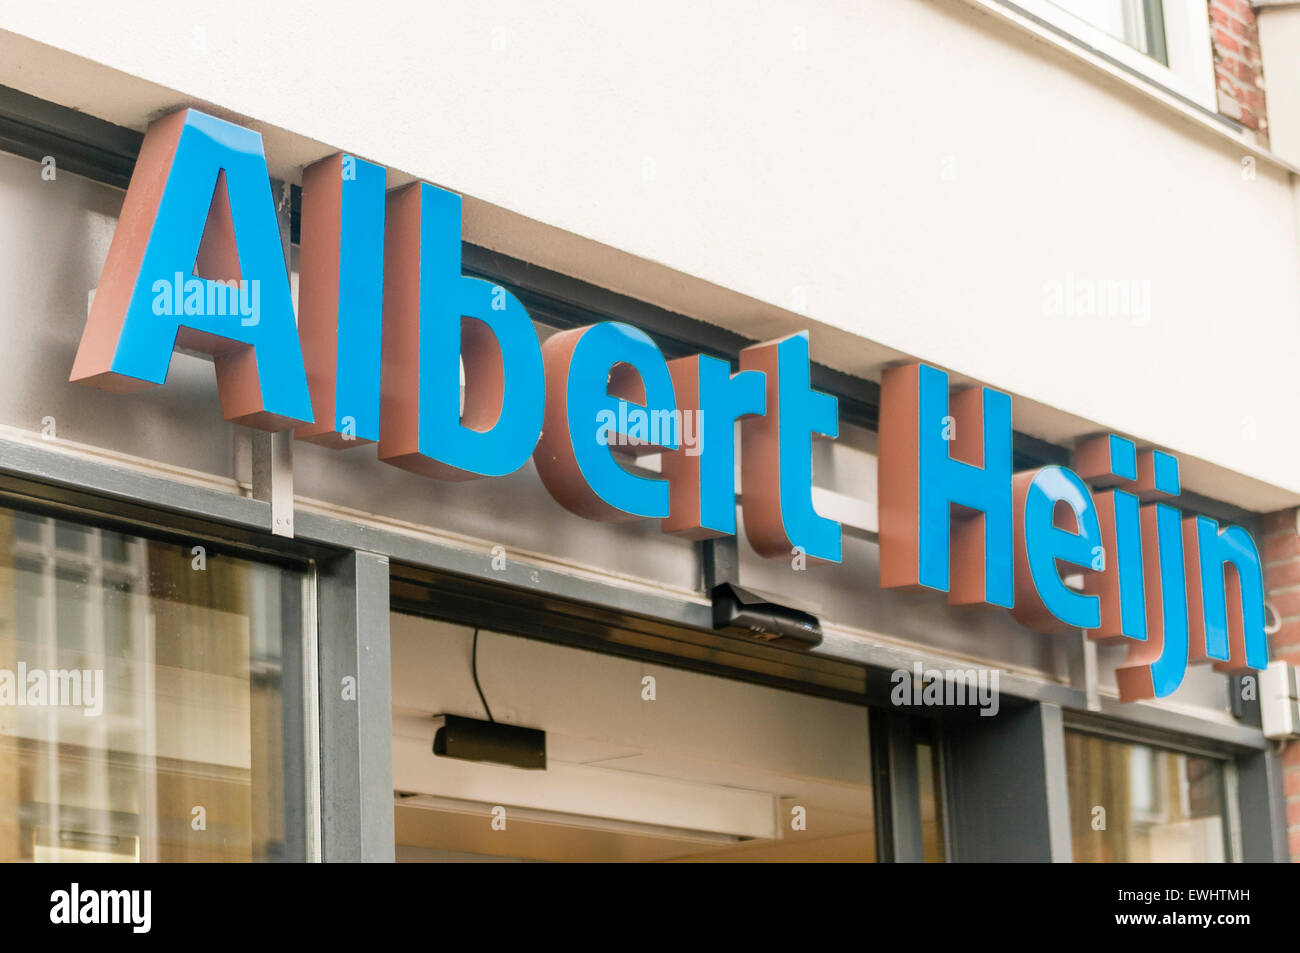 Albert Heijn supermarket chain in the Netherlands Stock Photo